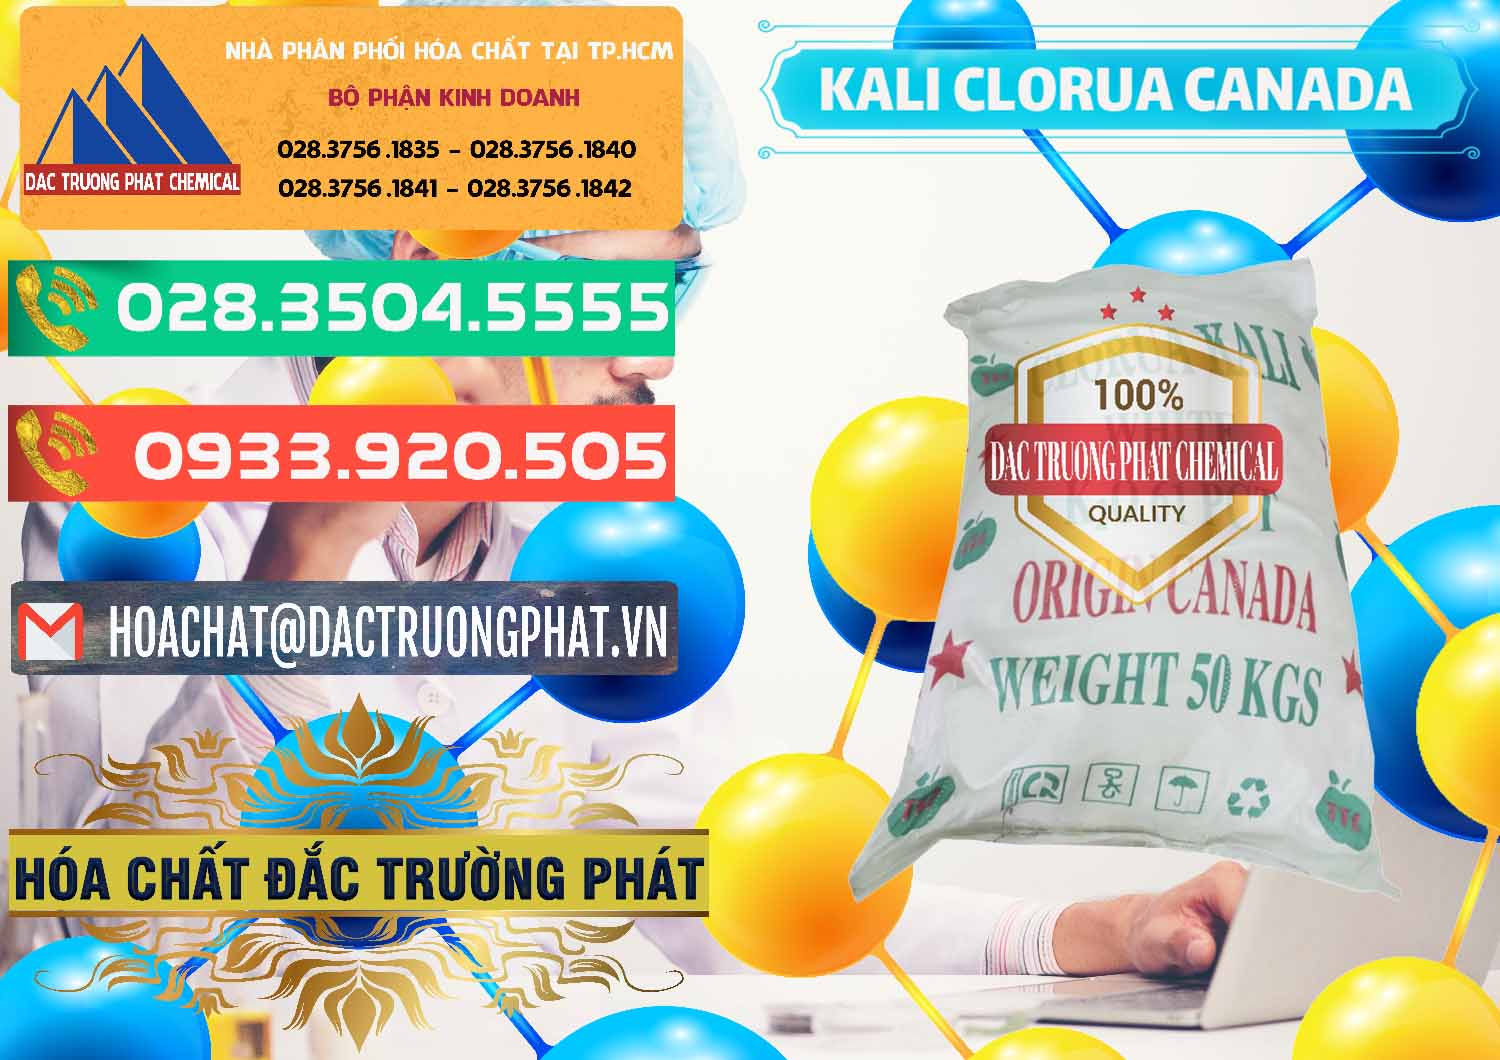 Cty bán và cung cấp KCL – Kali Clorua Trắng Canada - 0437 - Đơn vị cung cấp và nhập khẩu hóa chất tại TP.HCM - congtyhoachat.com.vn